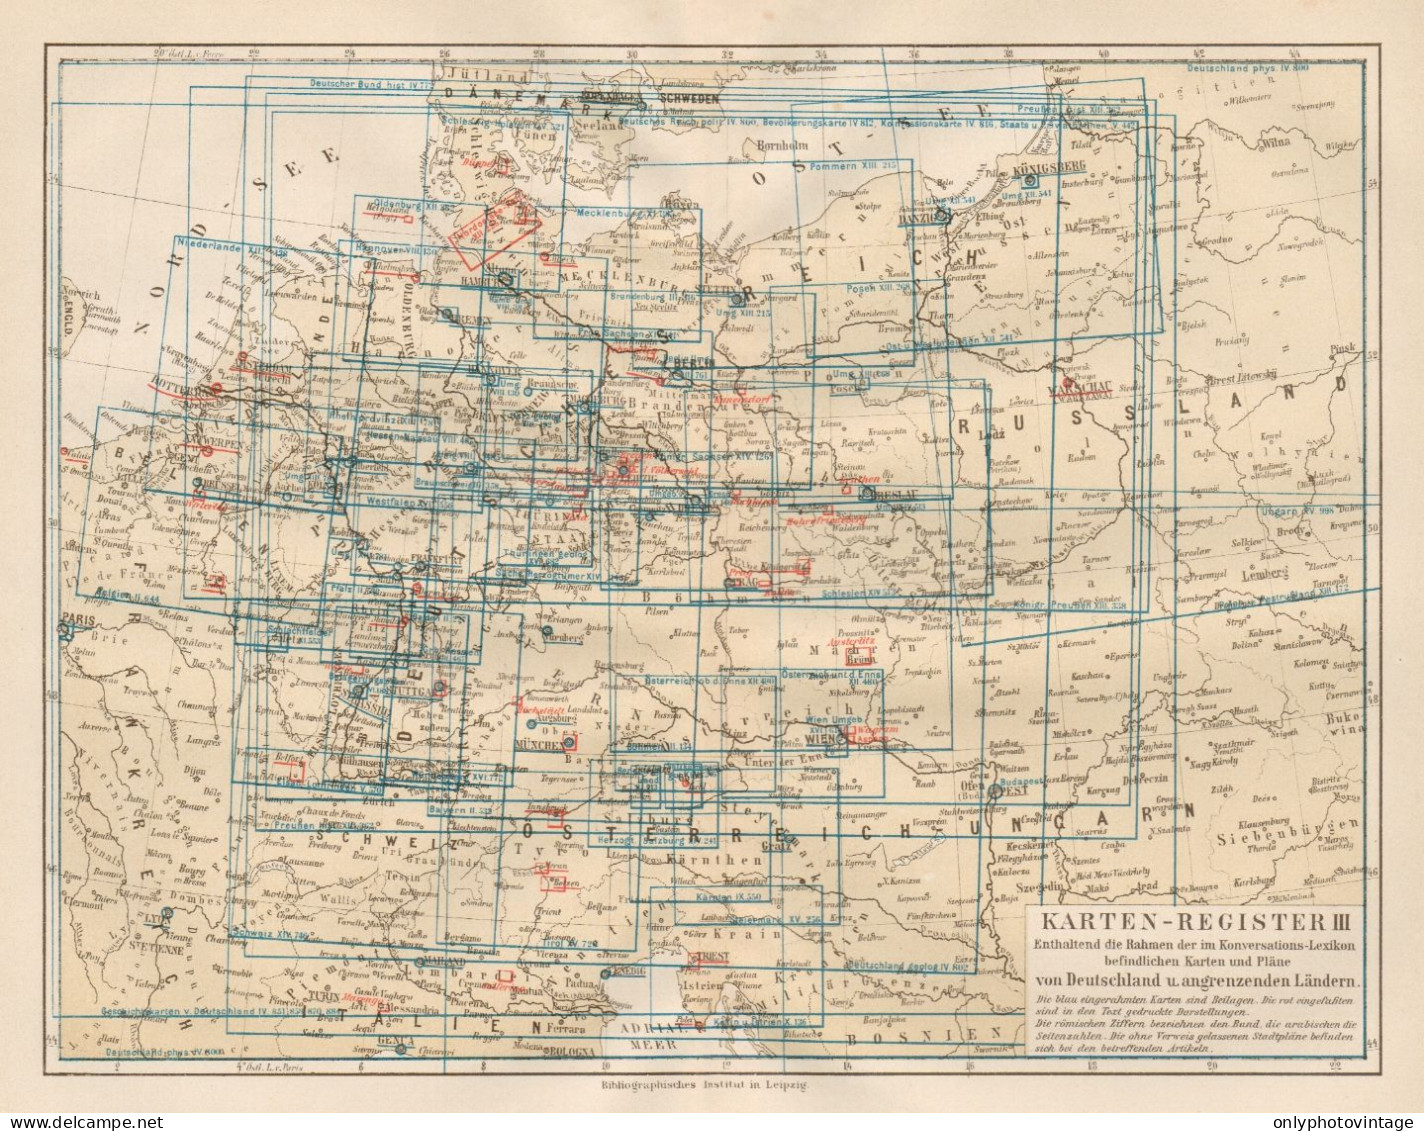 B6161 Karten Register III - Carta Geografica Antica Del 1890 - Old Map - Cartes Géographiques